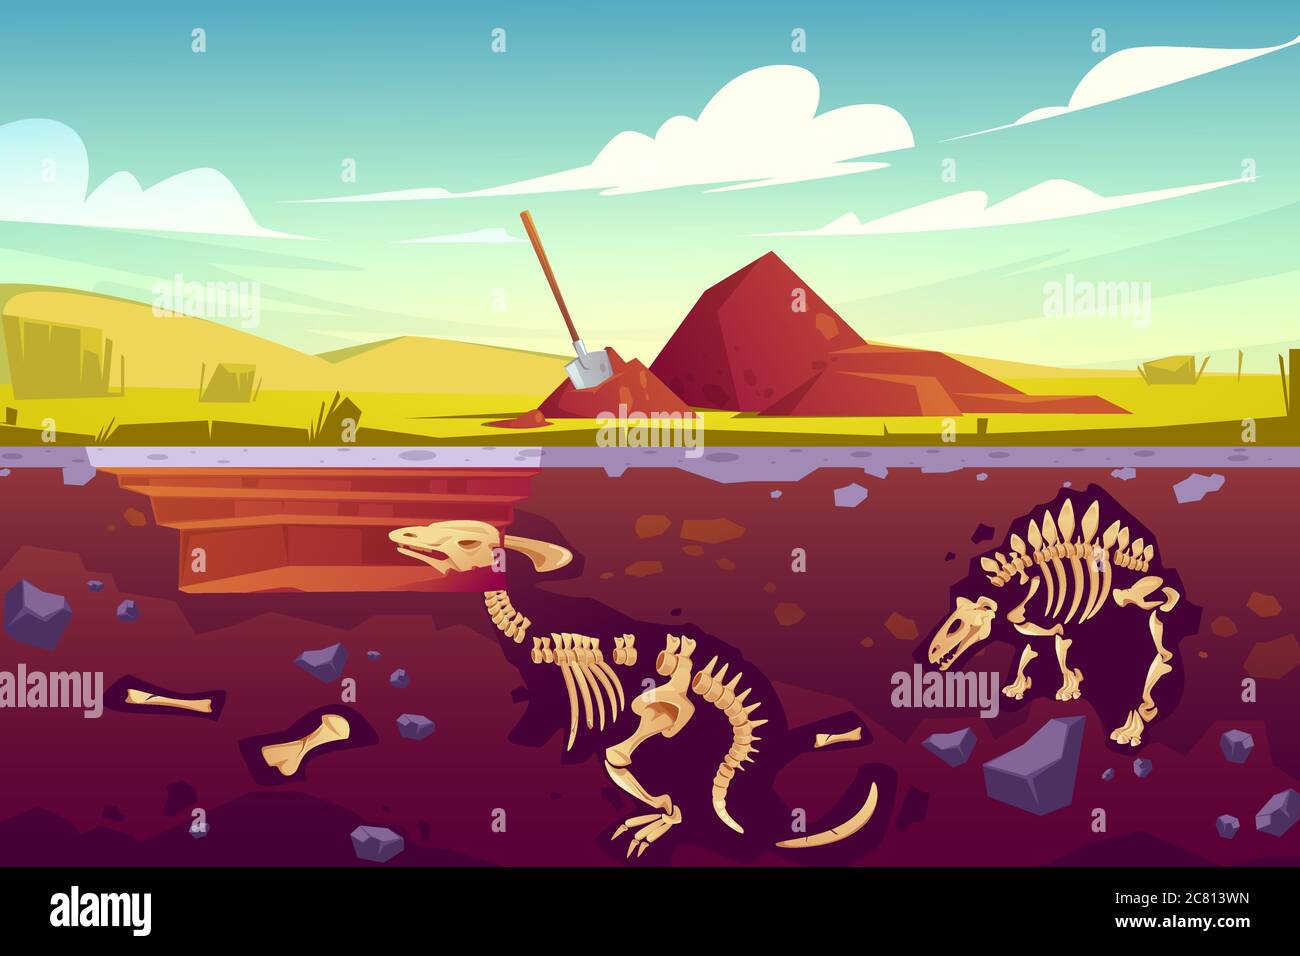 Fossil Dinosaurier Ausgrabung, Paläontologie und Archäologie Werke. Vektor-Cartoon-Illustration der Landschaft mit Pille des Bodens, Schaufel, begraben Skelette von prähistorischen Reptilien unterirdisch Stock Vektor